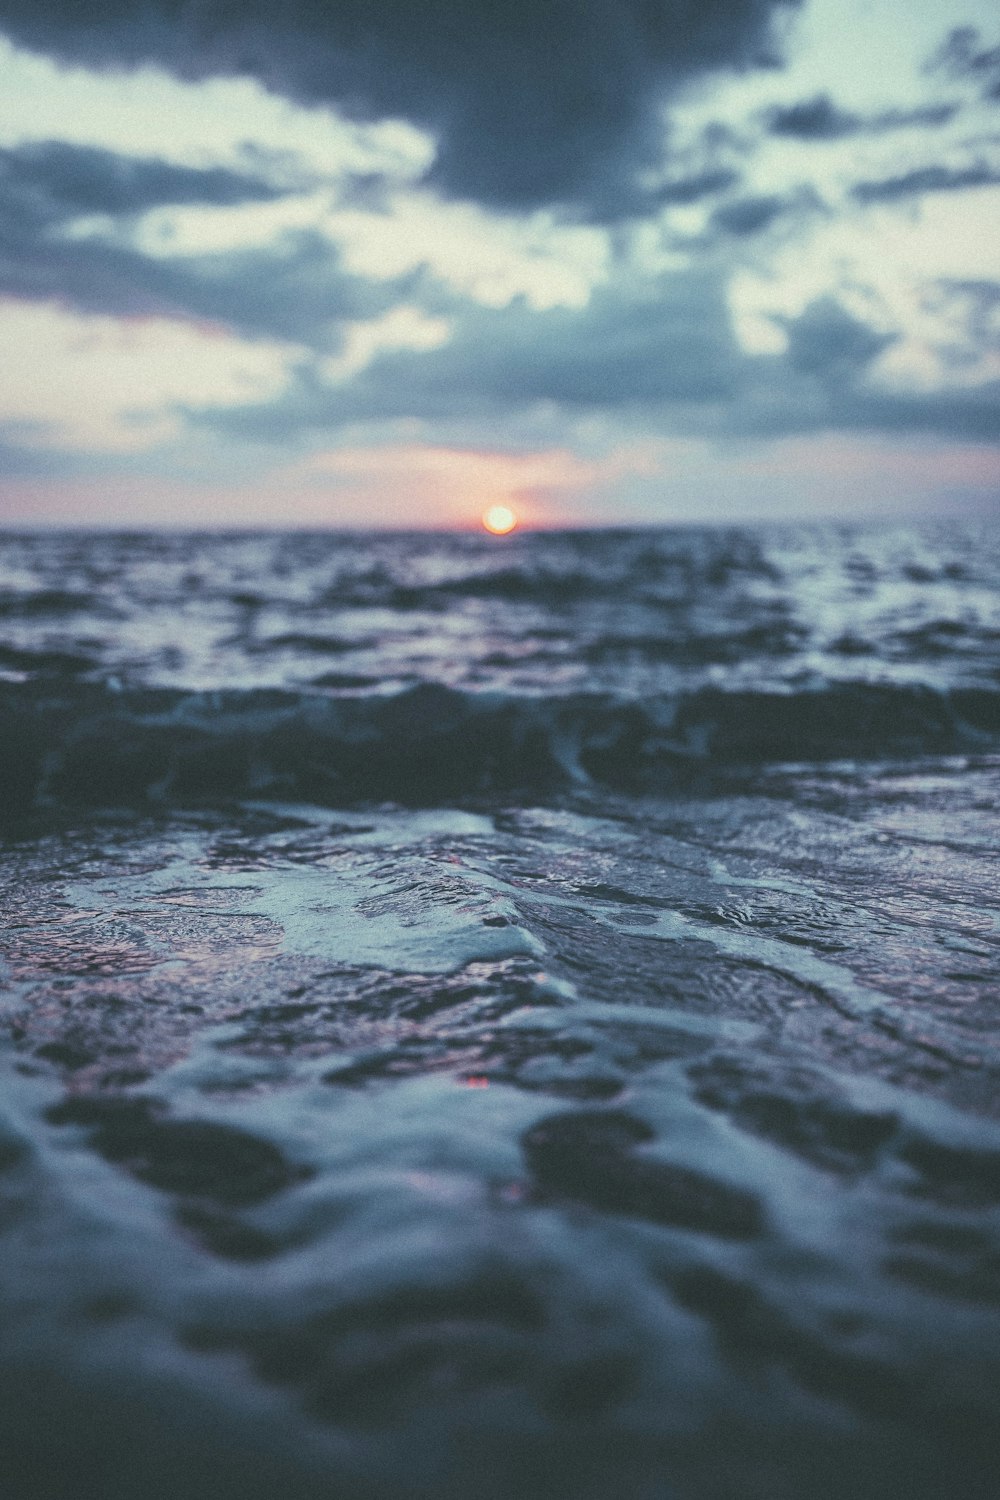 água ondulada do oceano ao pôr do sol